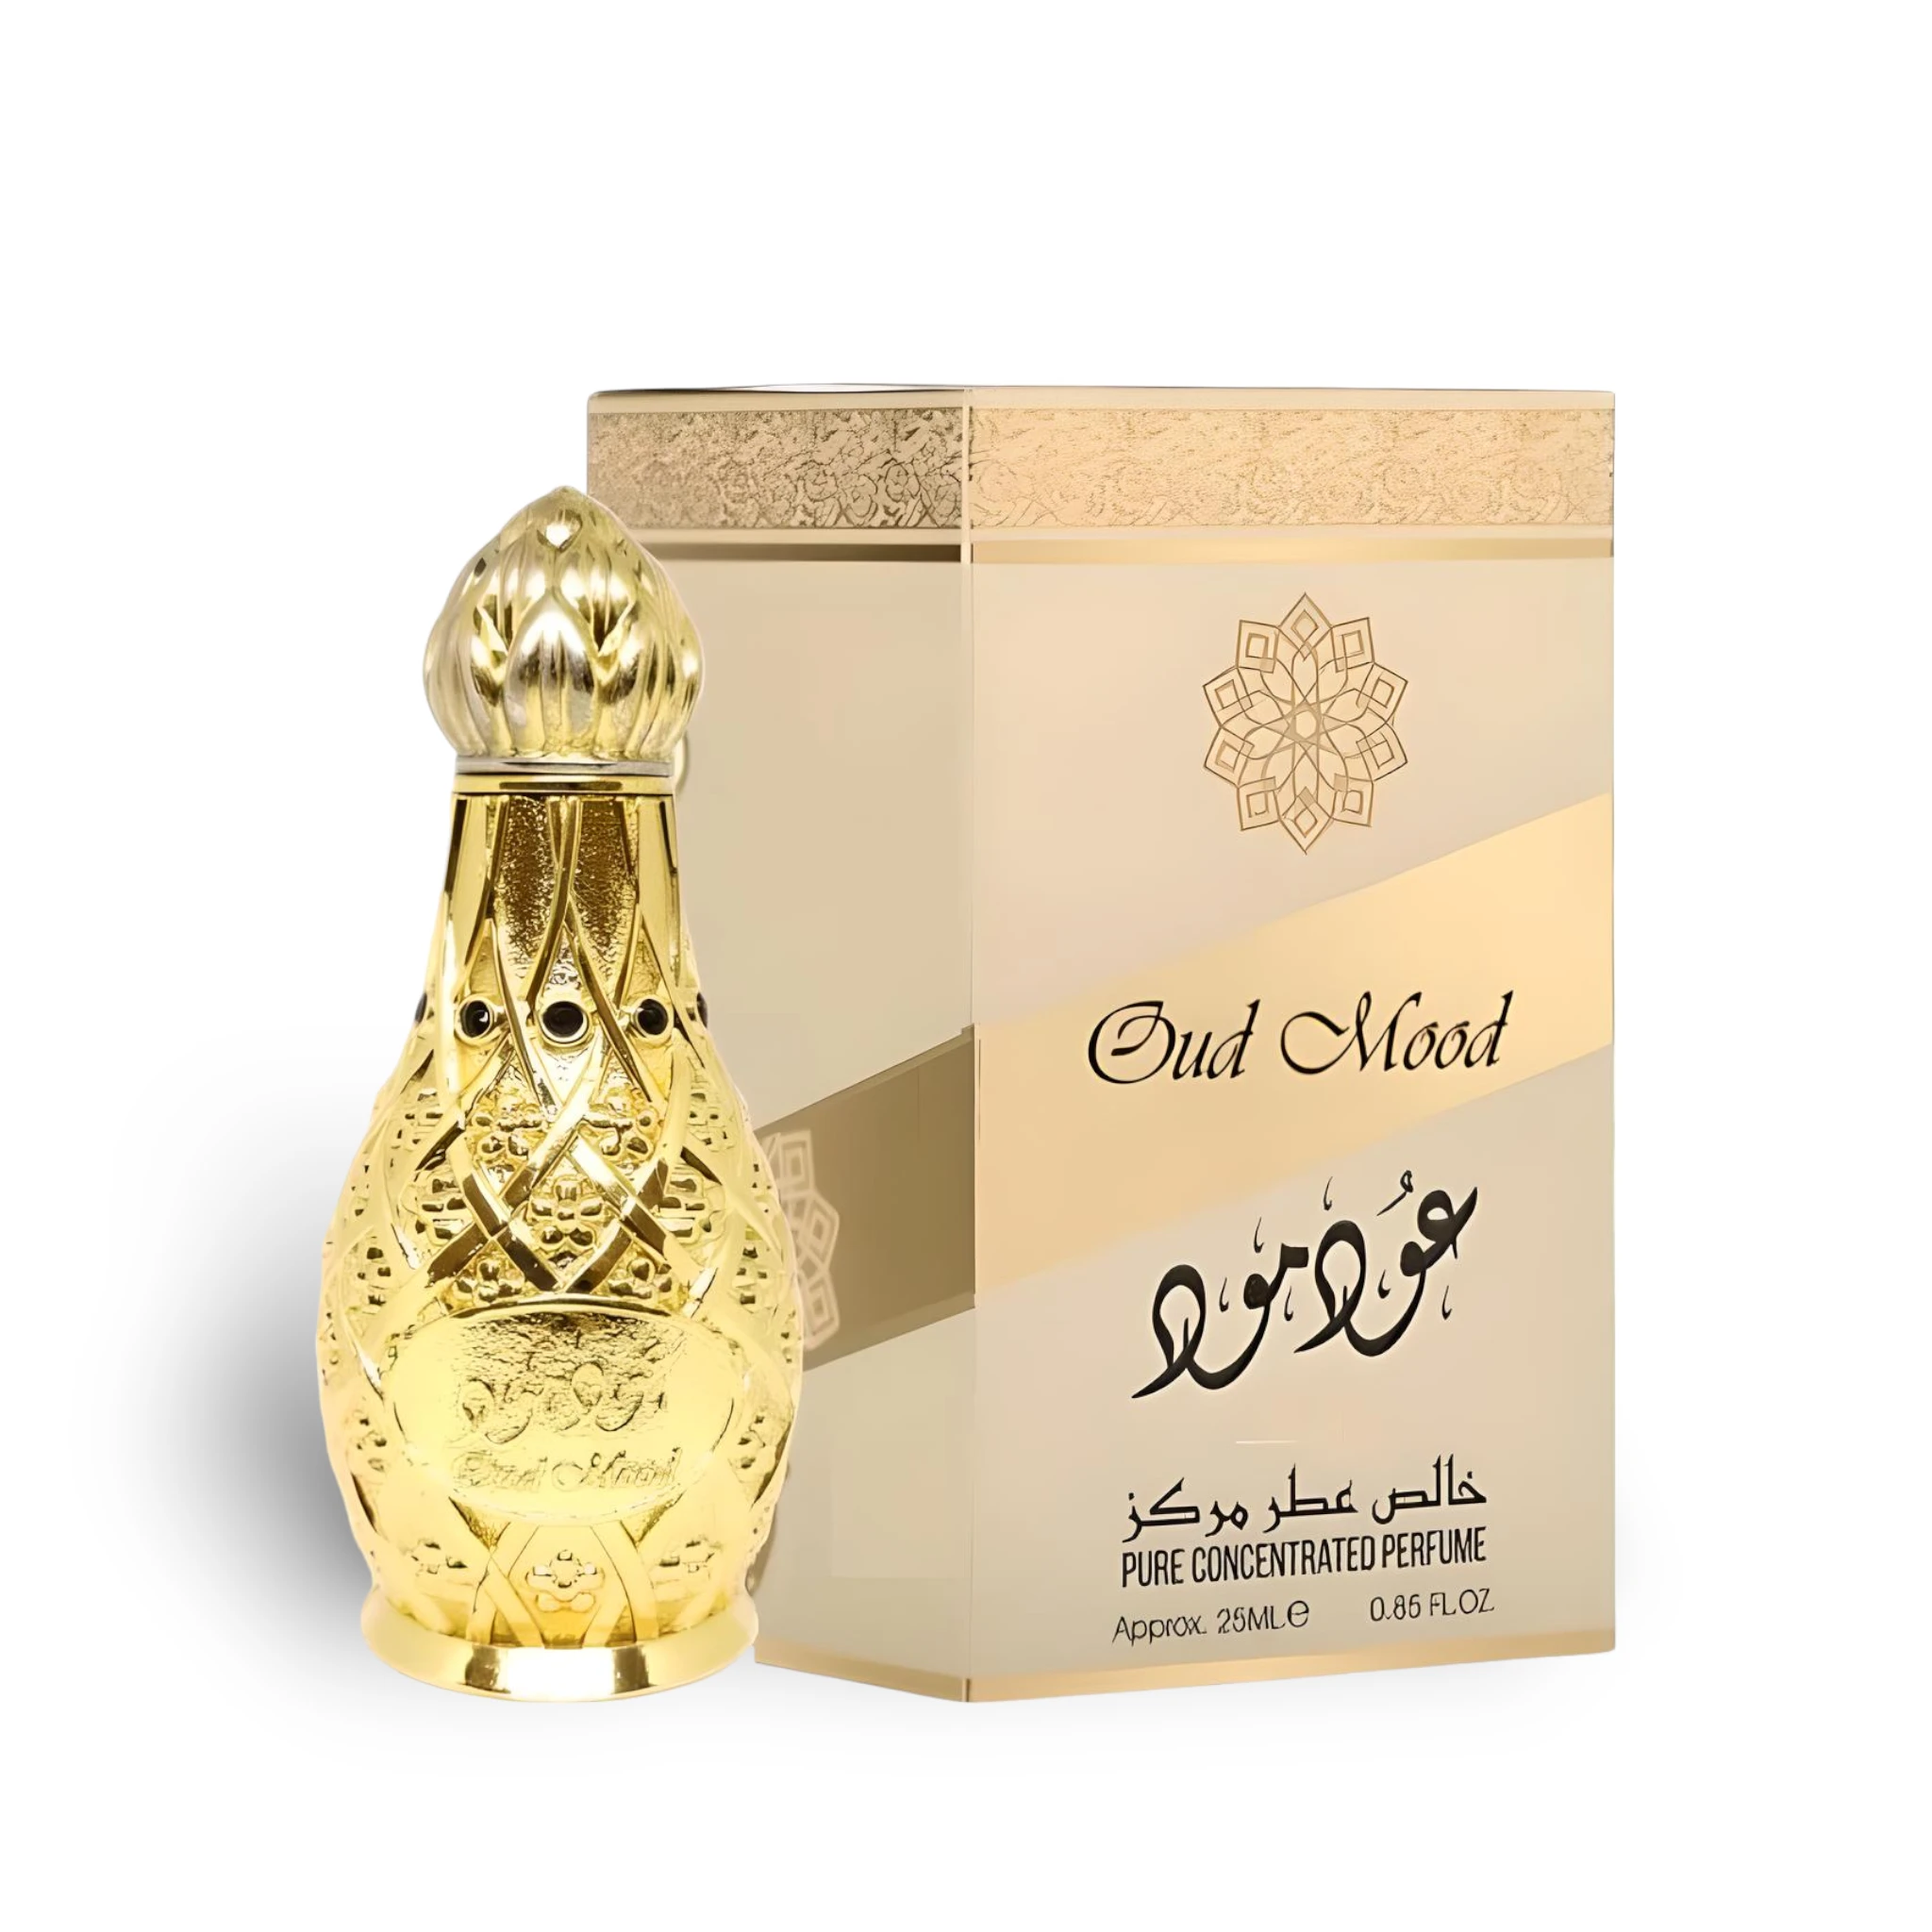 Oud Mood Concentrated Perfume Oil Attar 25Ml By Lattafa